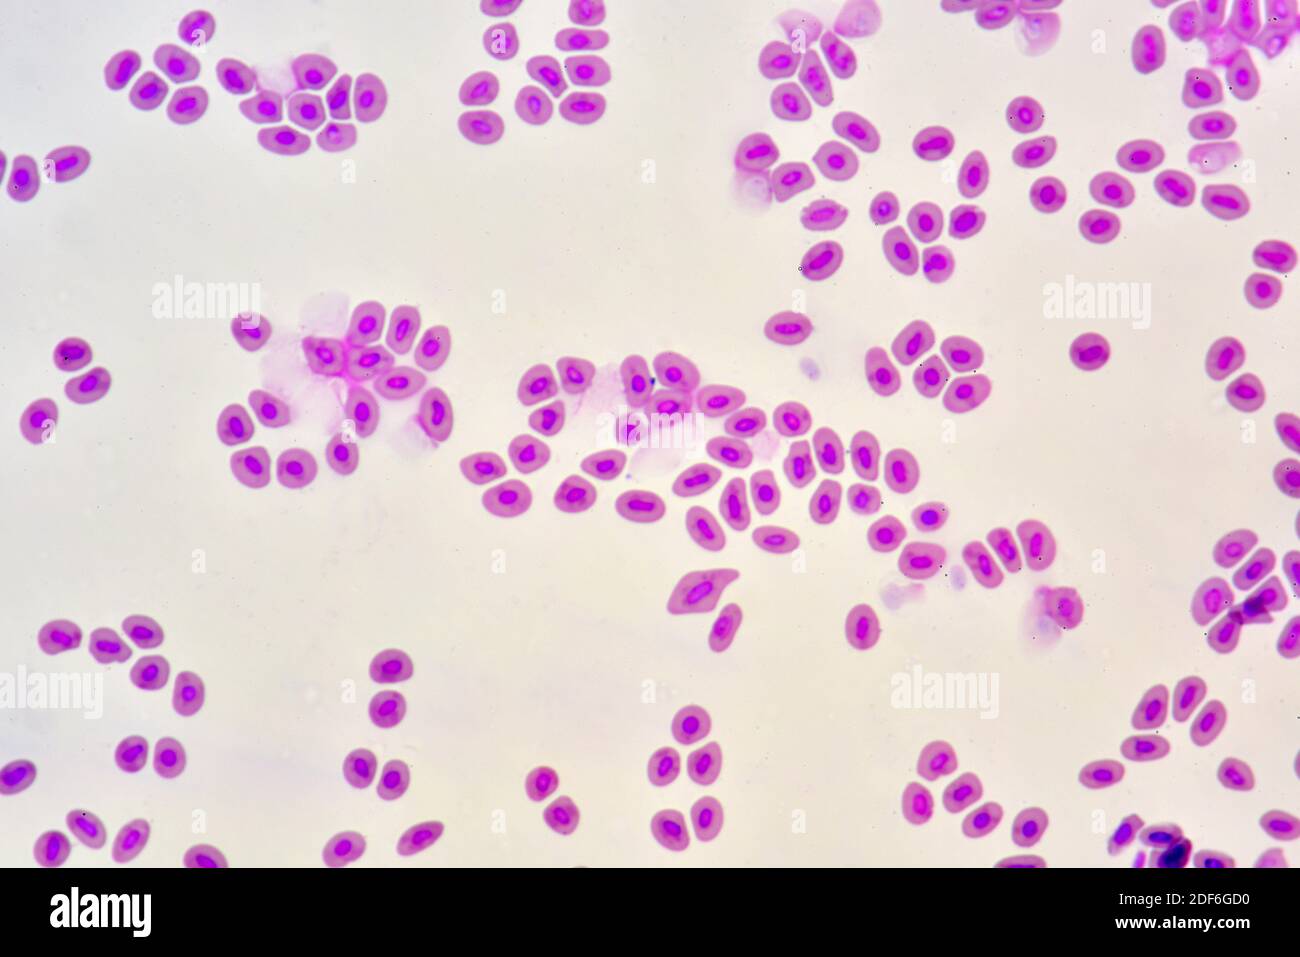 Sangre de peces con eritrocitos nucleados. Microscopio óptico X400. Foto de stock